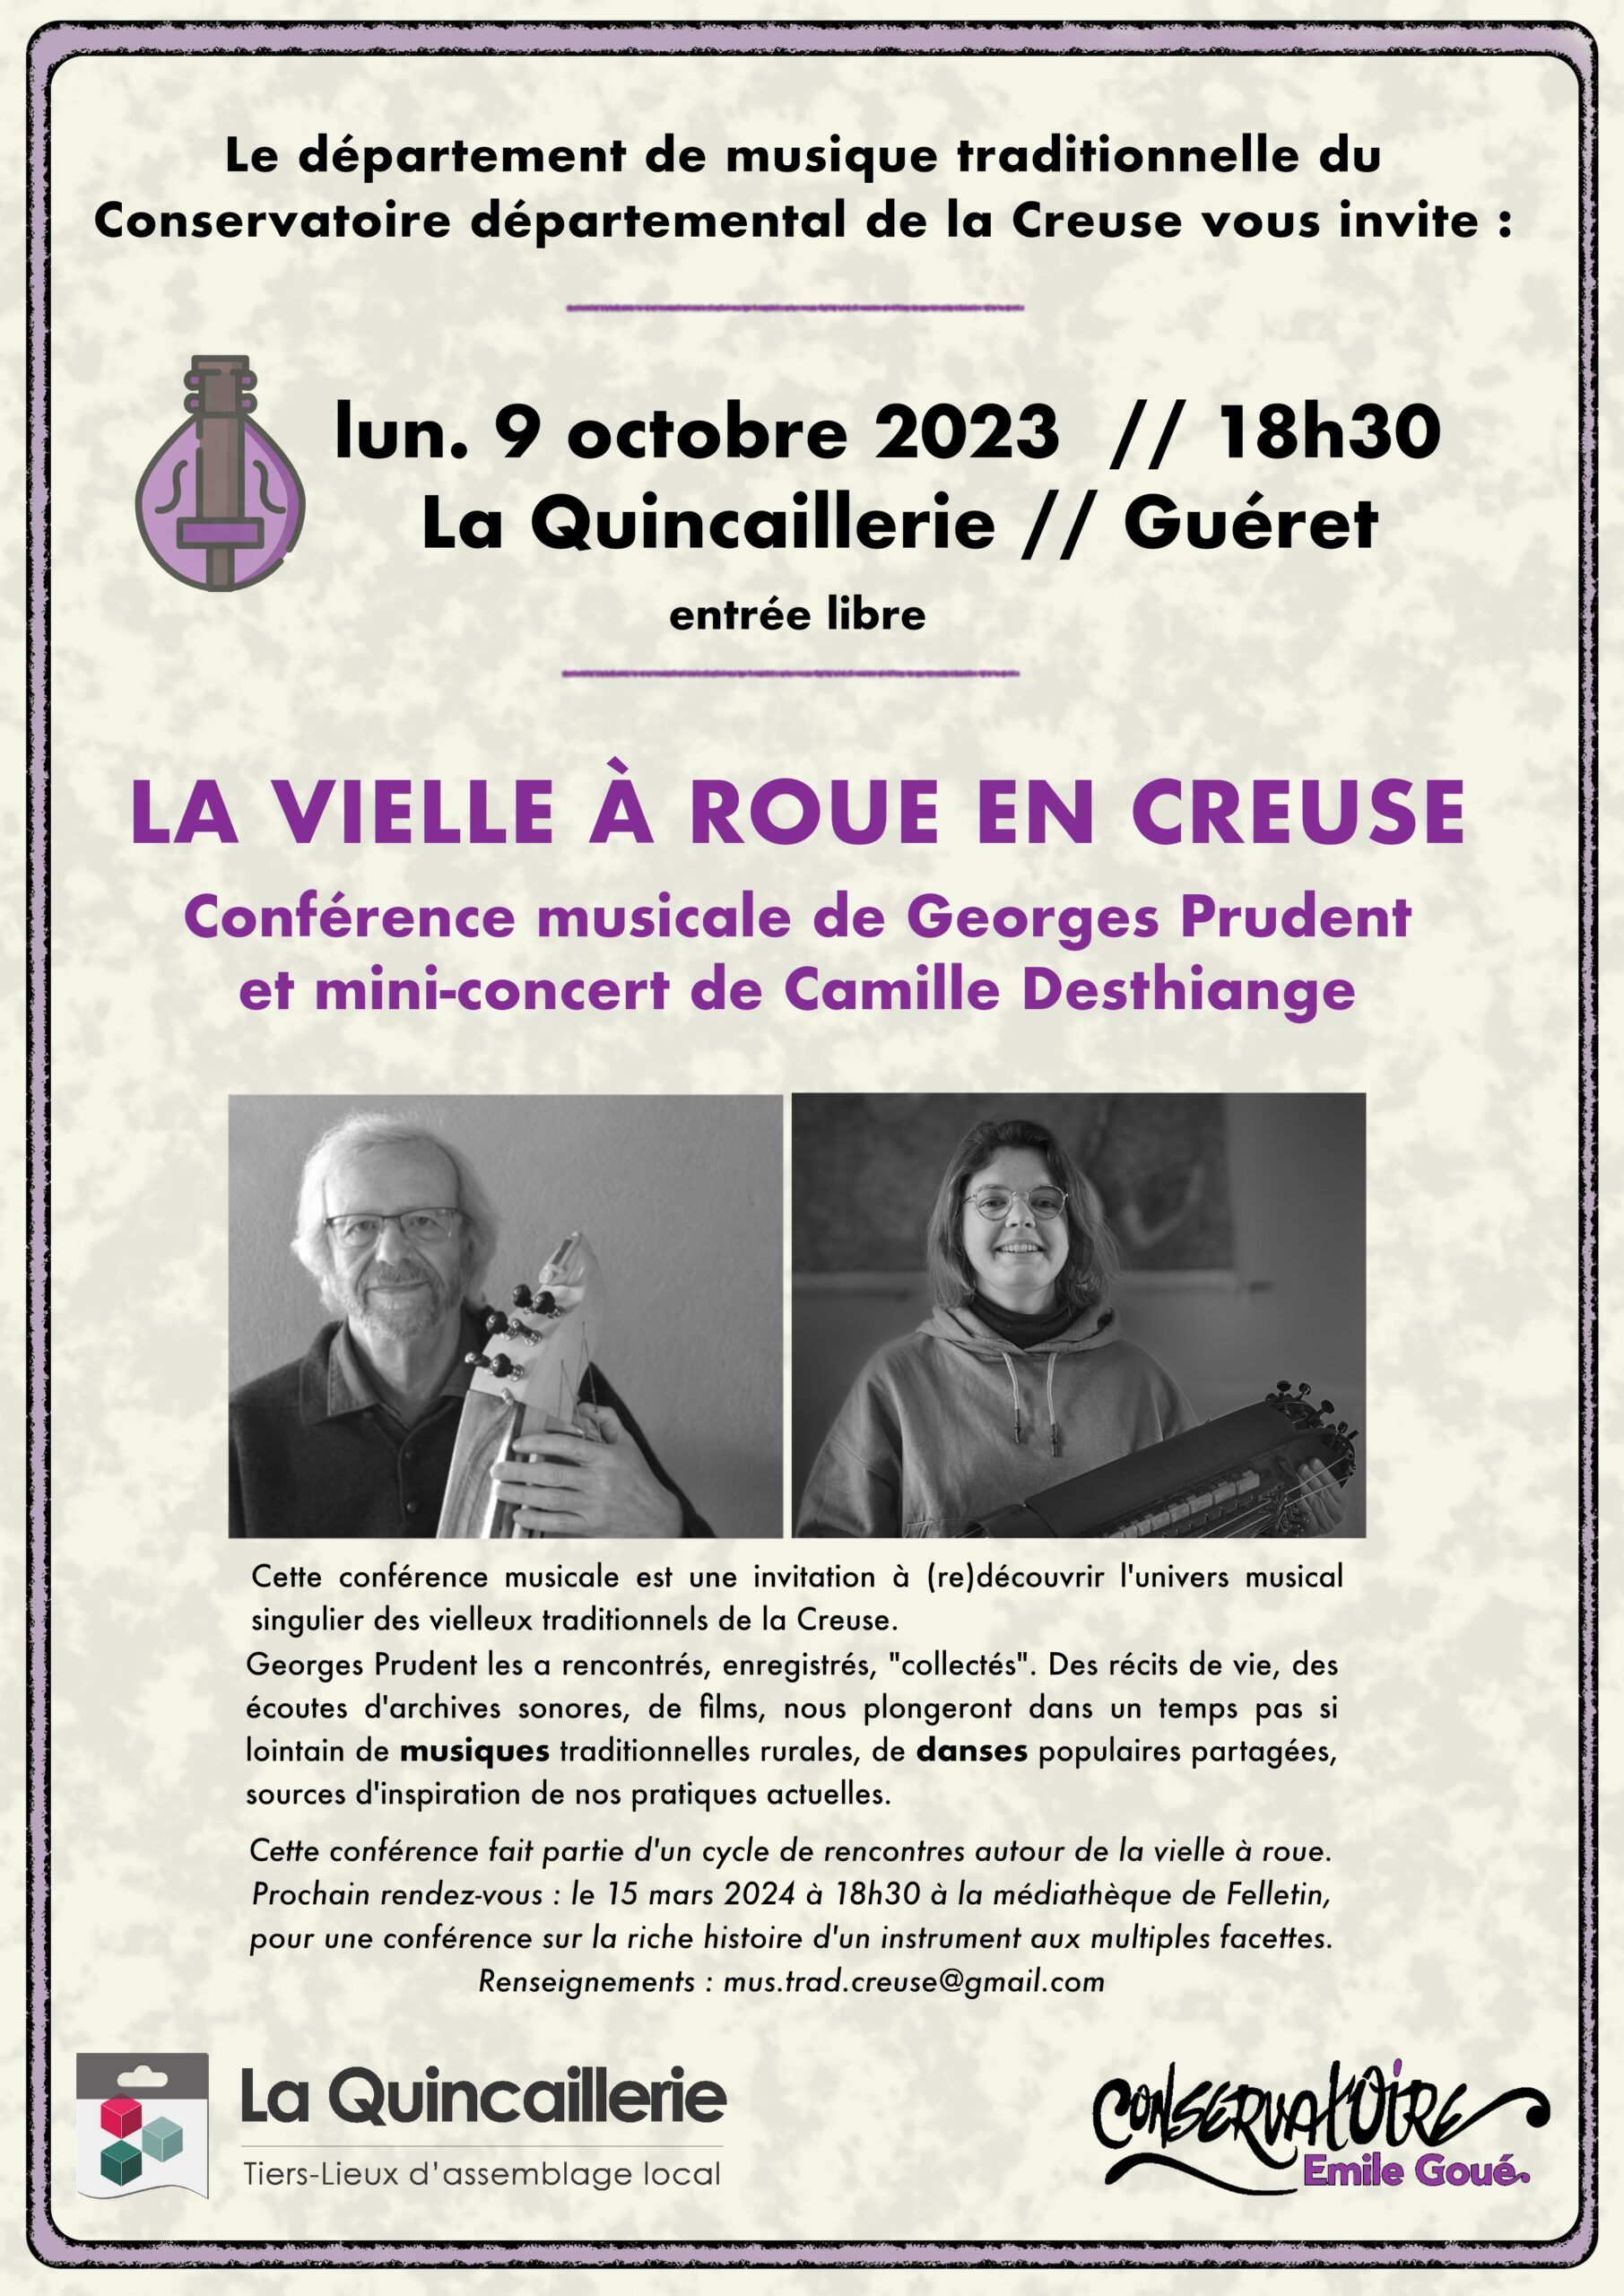 Conférence musicale de Georges Prudent et mini-concert de Camille Desthiange